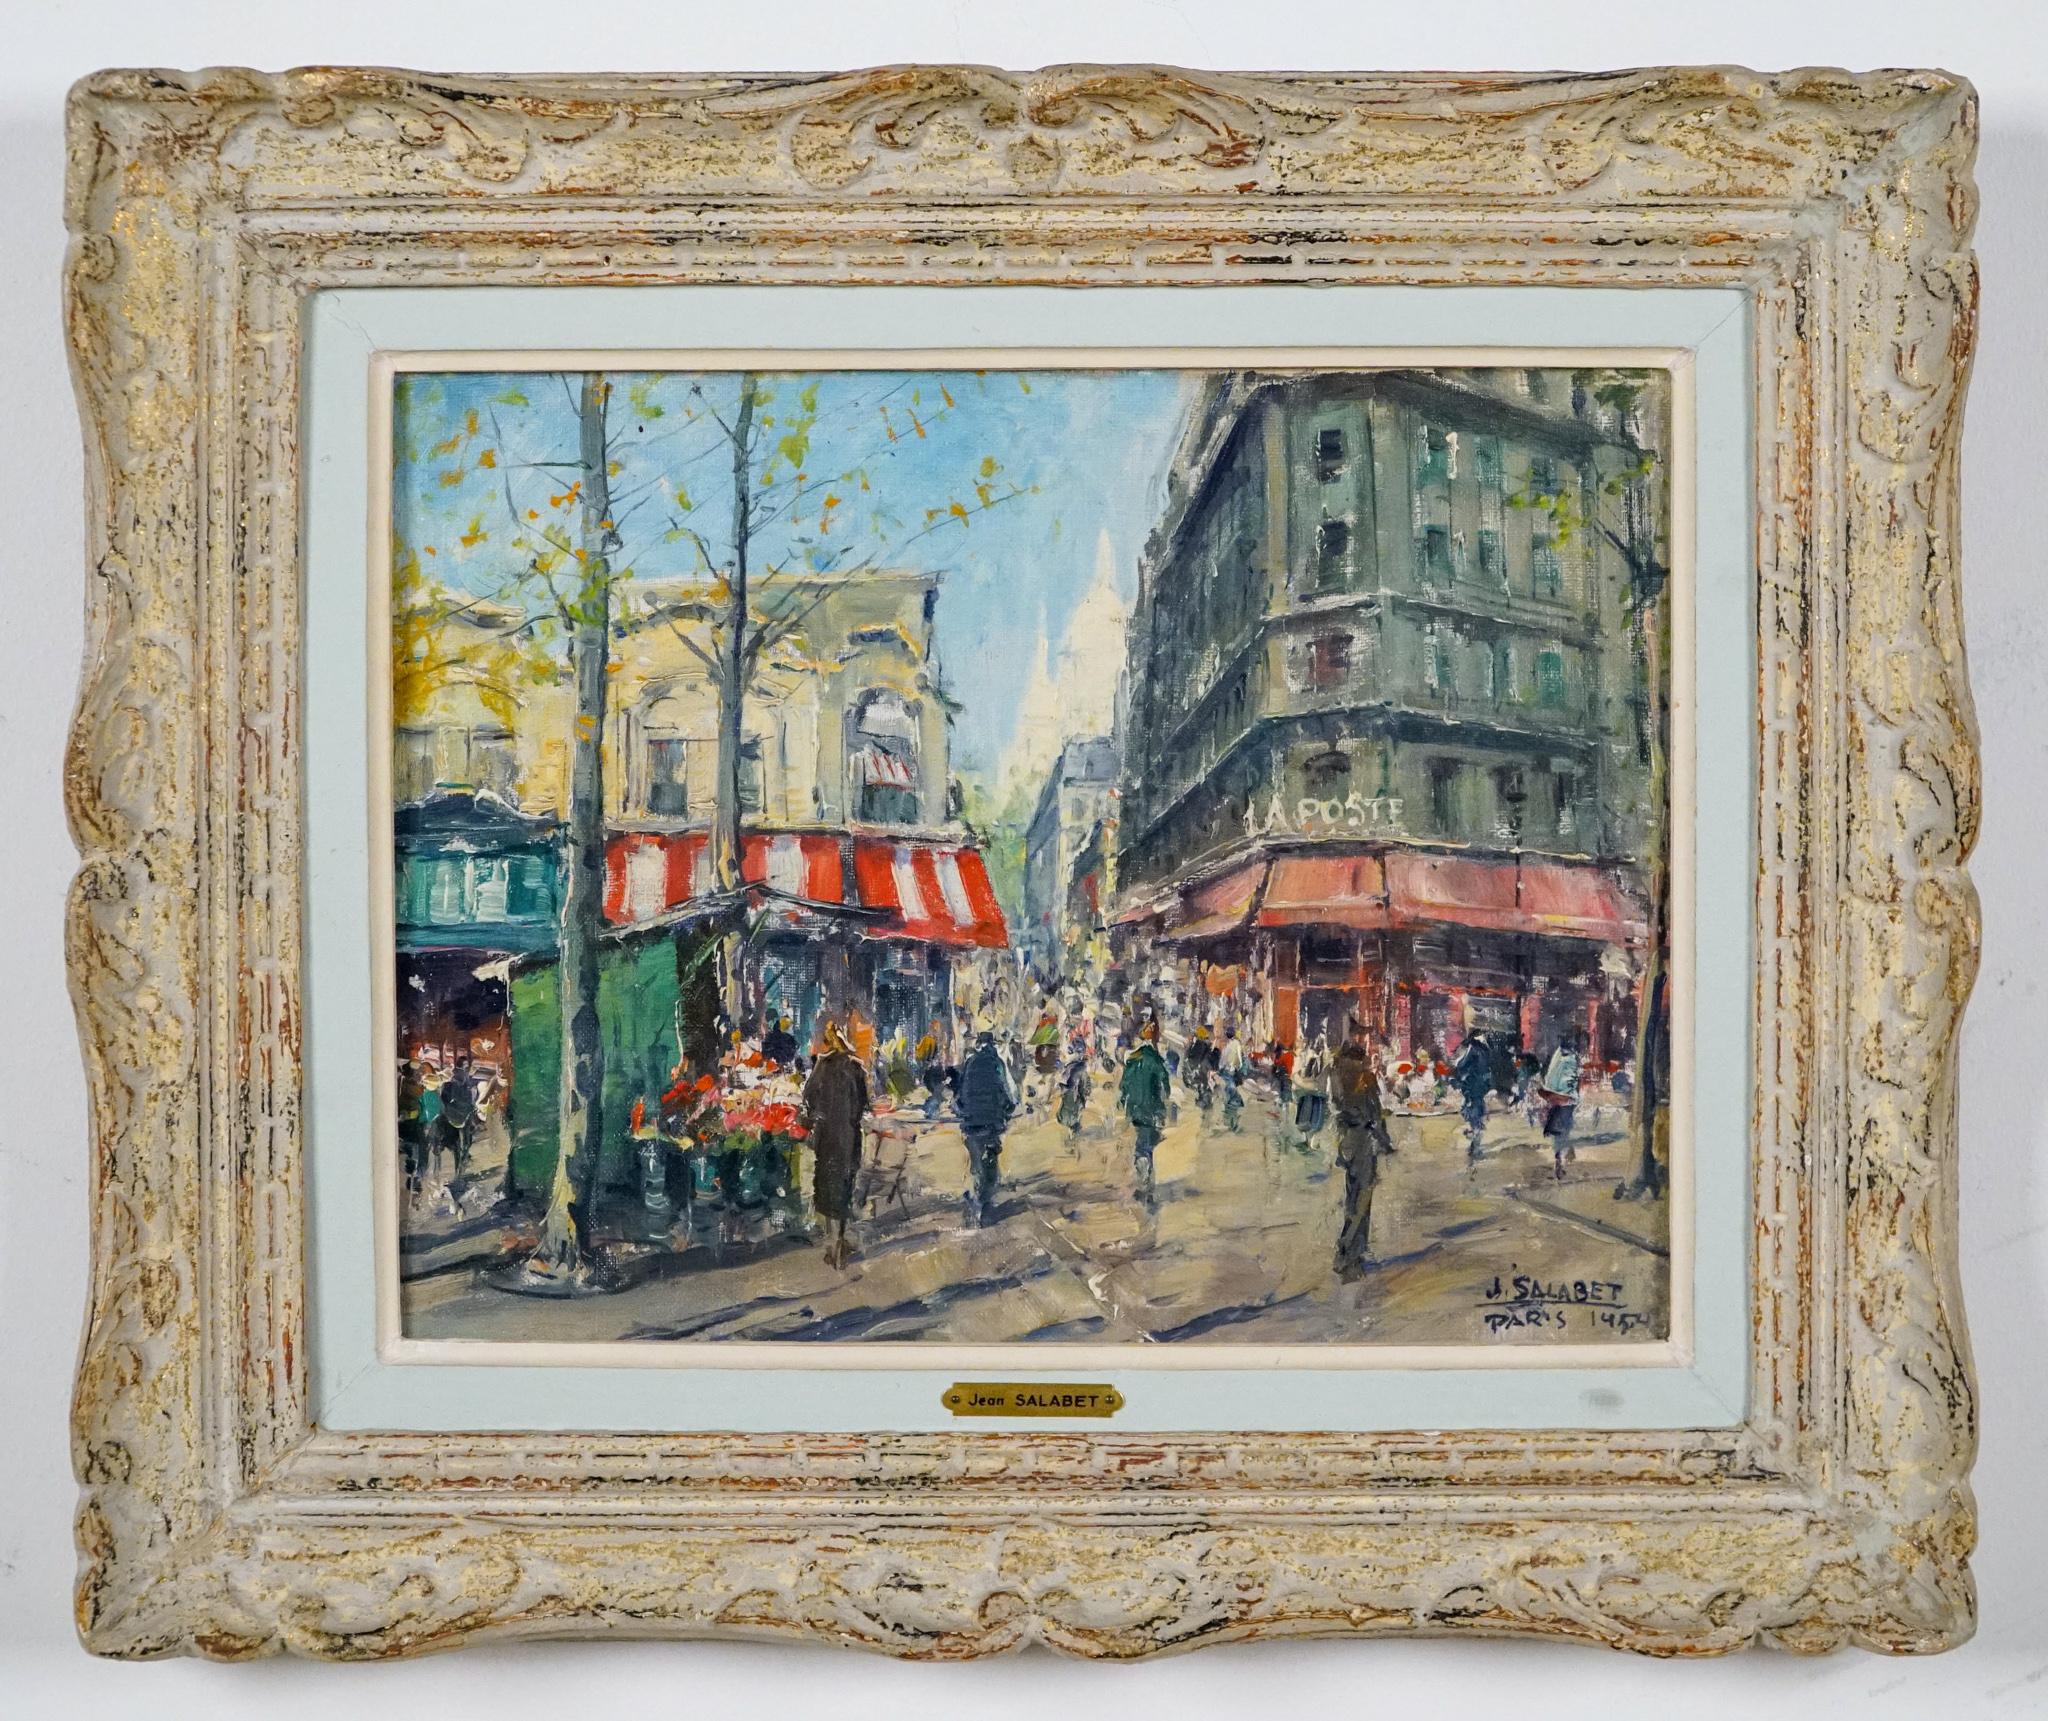 Les postes La Poste   1954  PARIS  - Scène de rue post-impressionniste - Painting de Jean Salabet